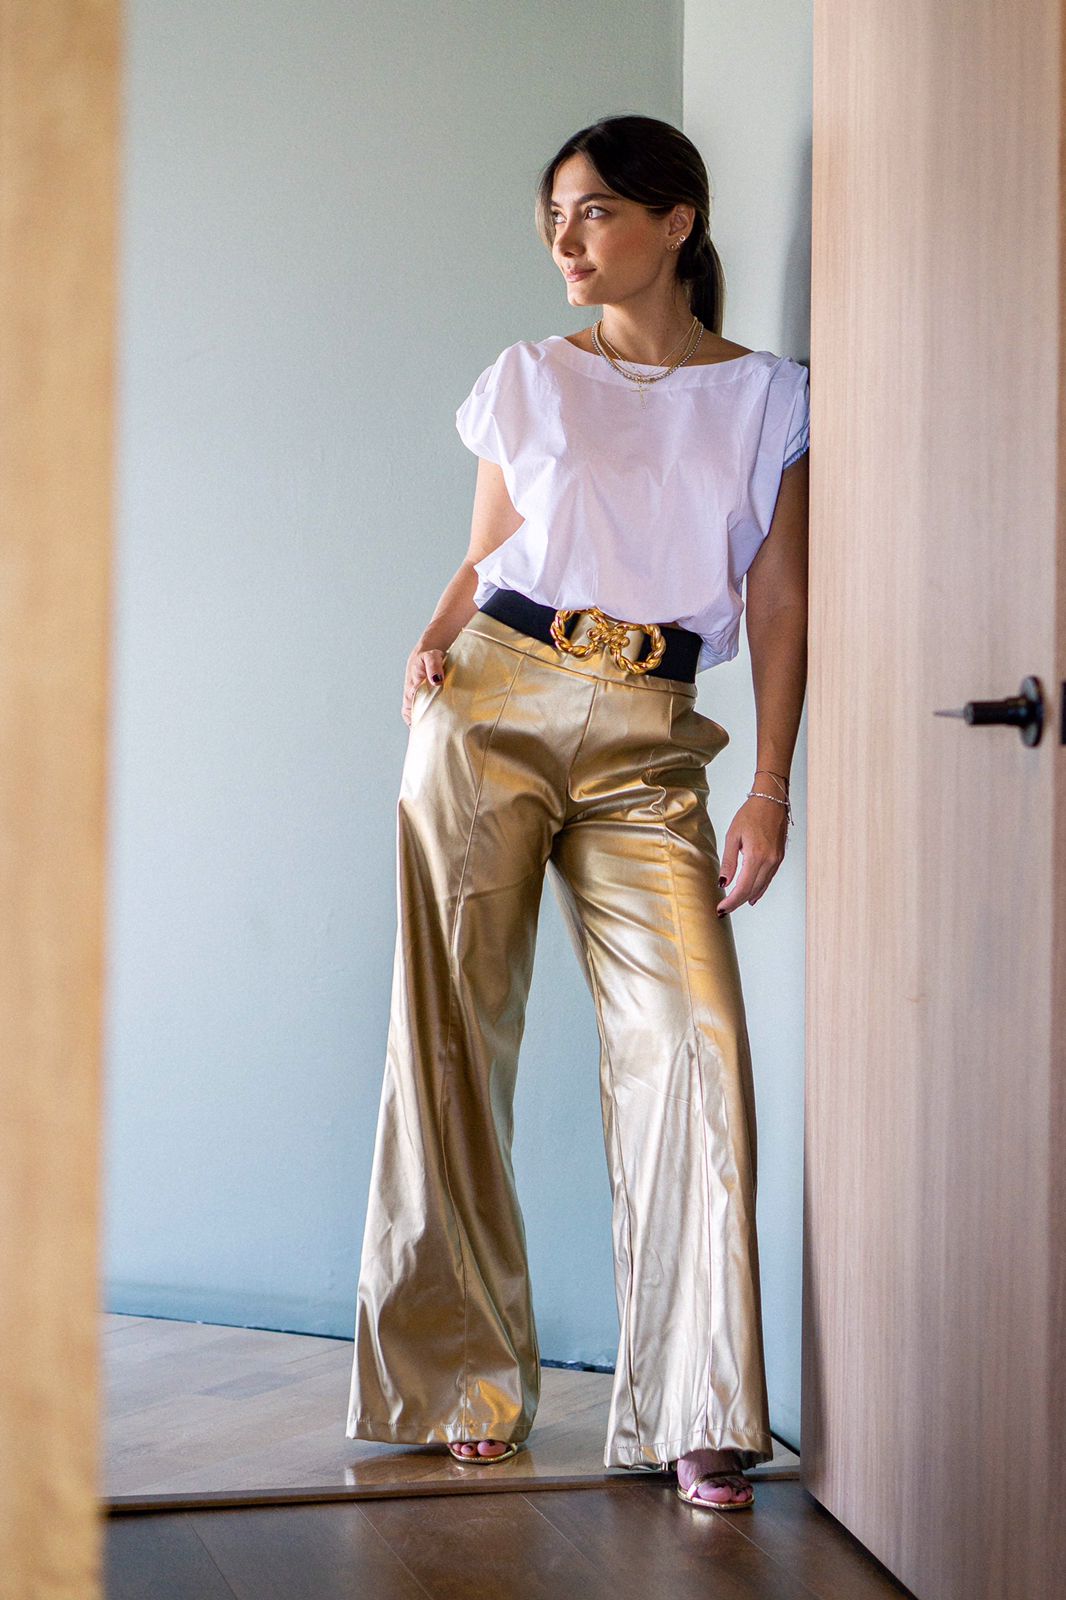 Pantalon bota recta con efecto metalizado color dorado con blusa